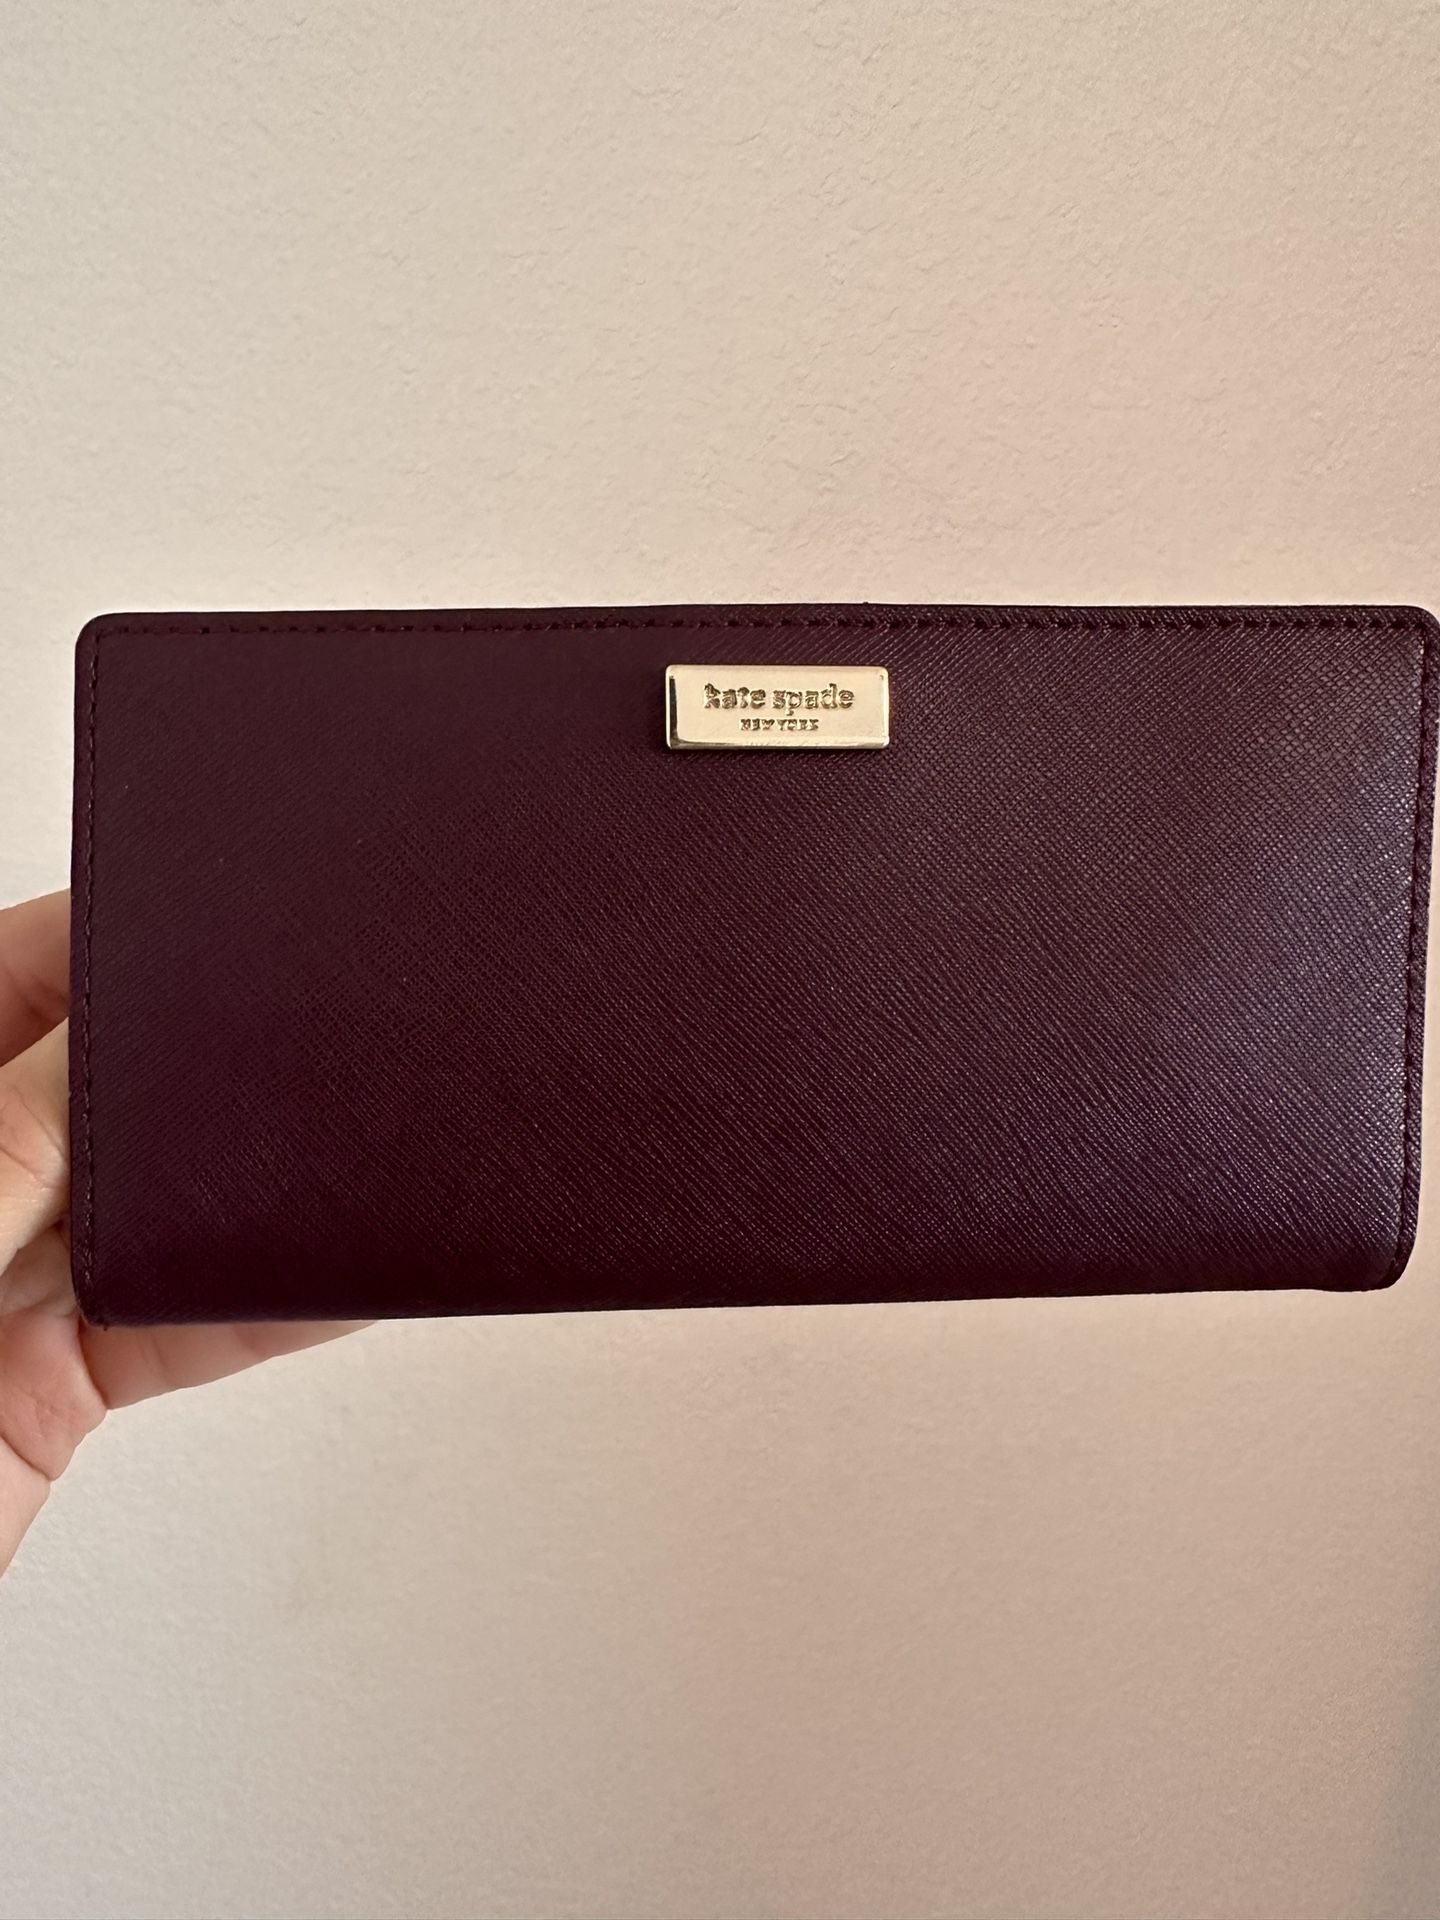 Kate Spade Maroon Wallet